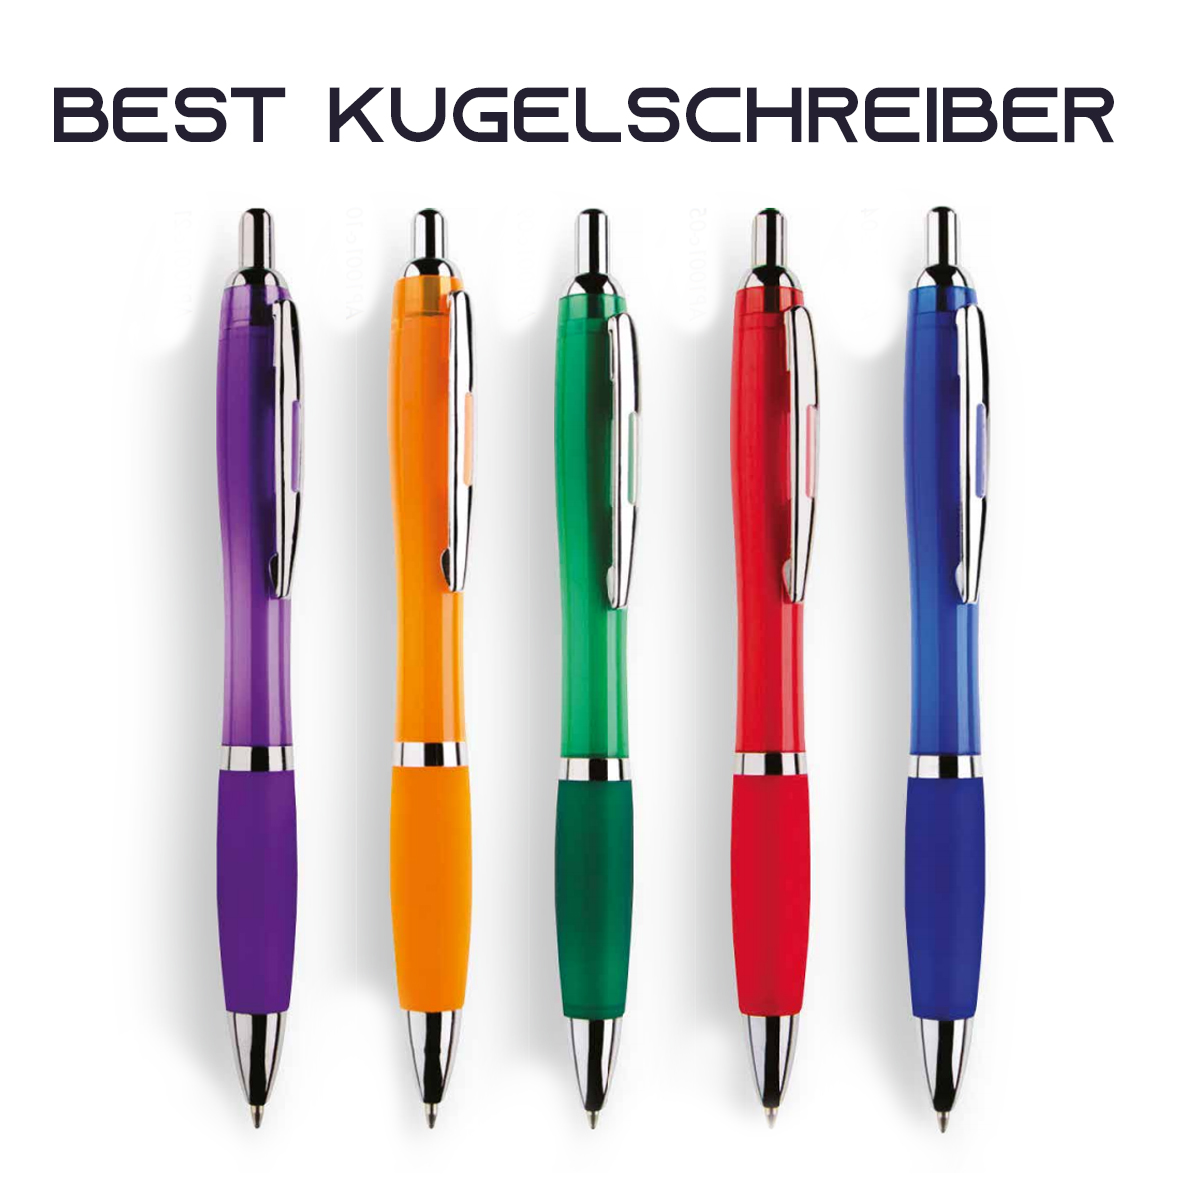 Kugelschreiber Best mit farbigem Griff